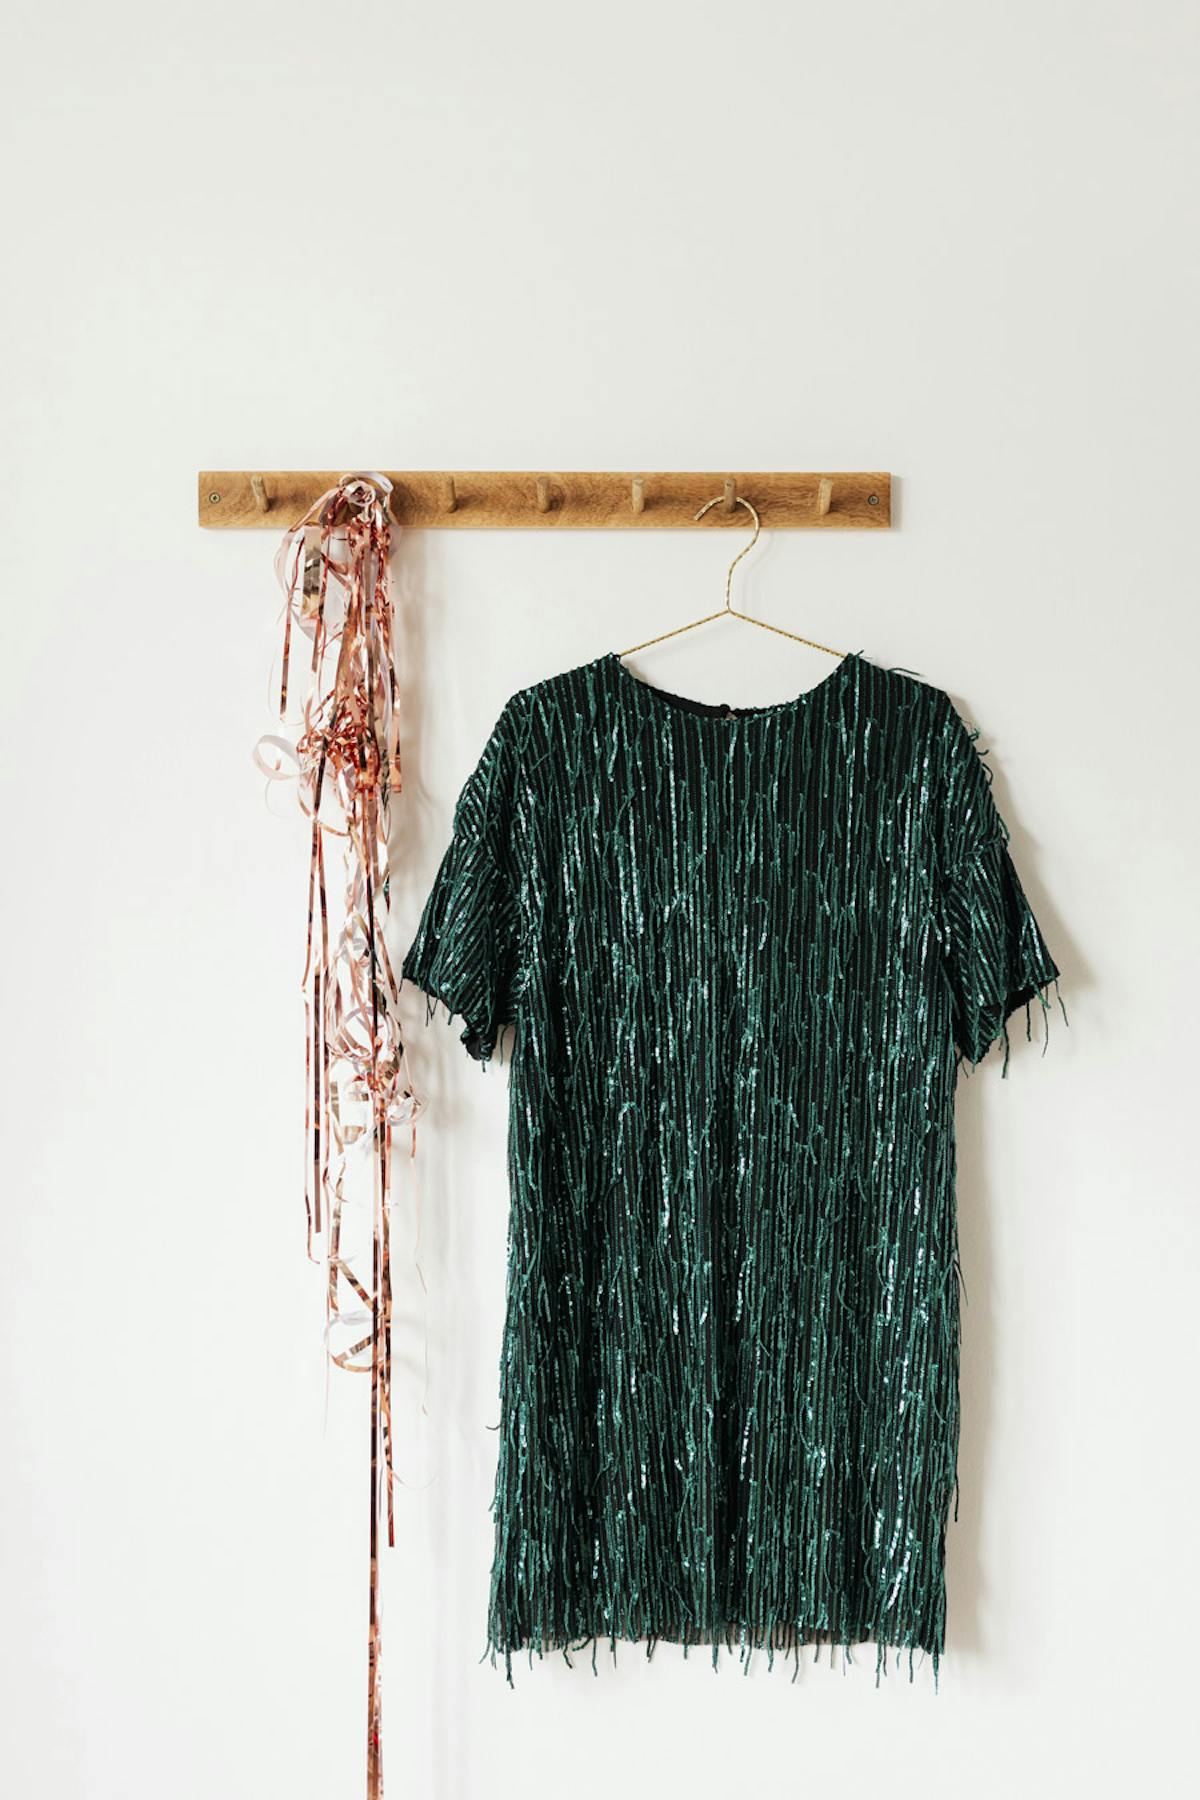  foto de un vestido de lentejuelas verdes colgado en la pared